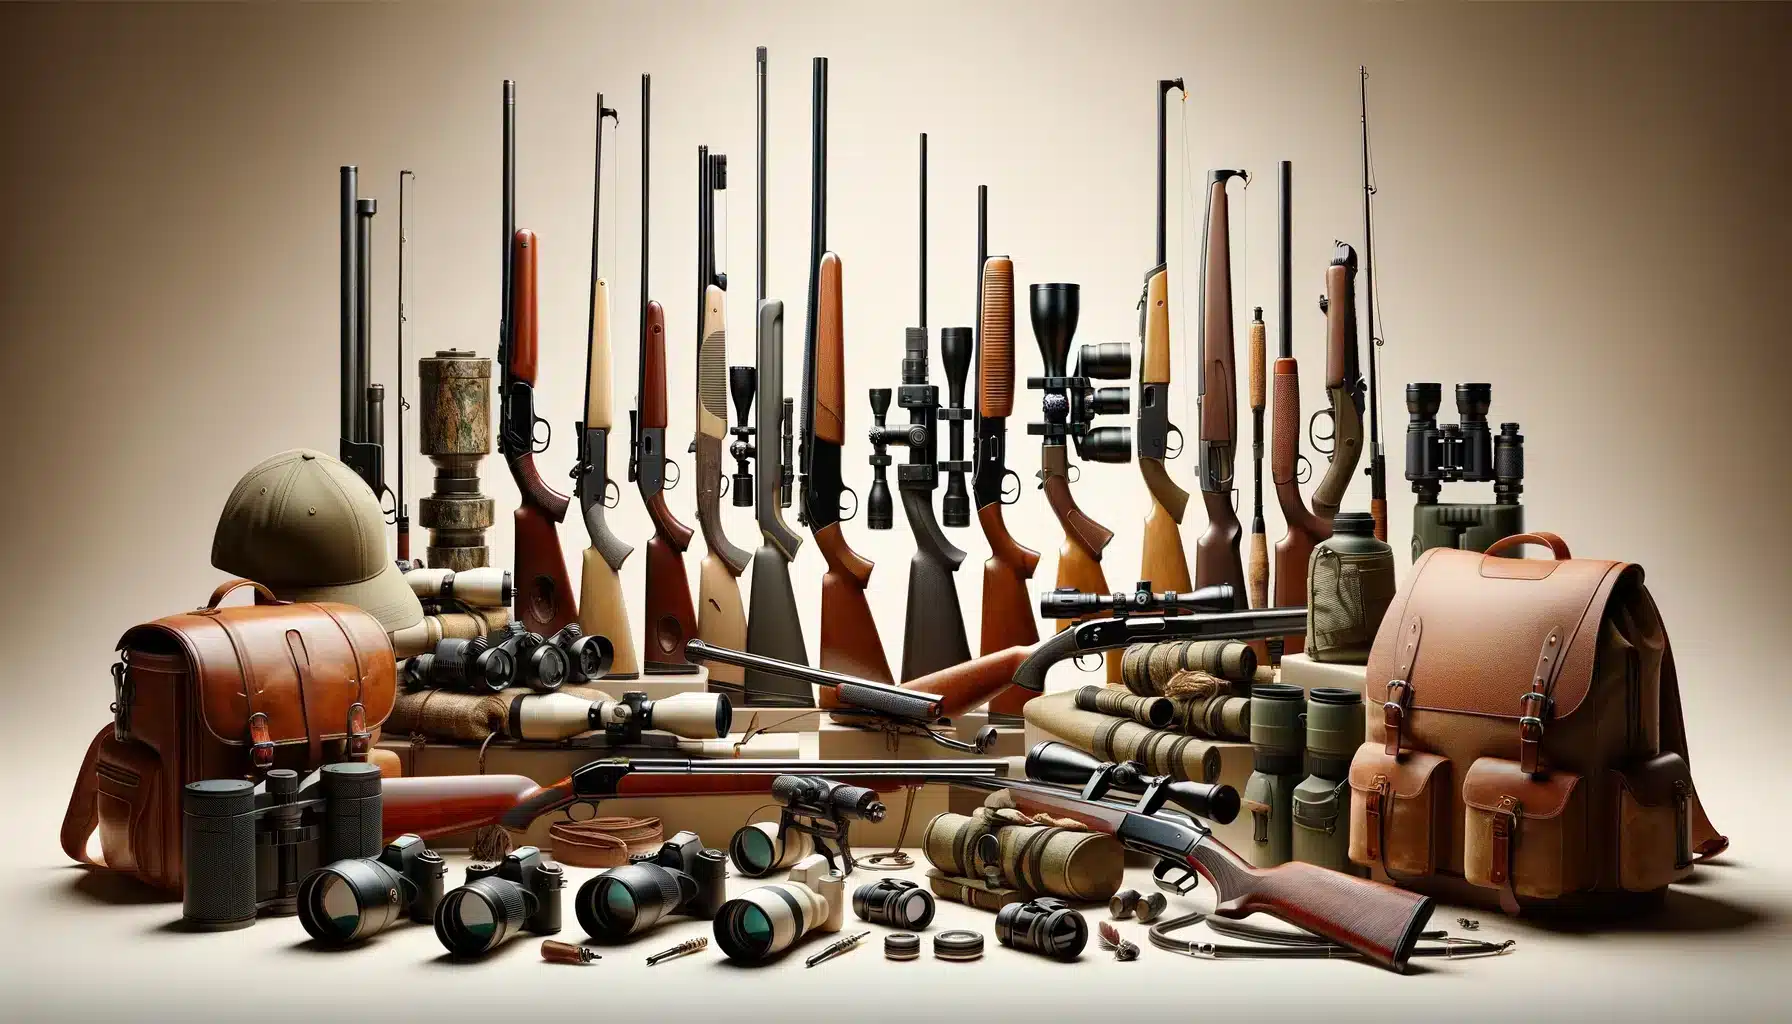 Collection diversifiée d'équipement de chasse et de pêche, y compris des armes à feu, cannes à pêche, et accessoires de plein air, disposés artistiquement.